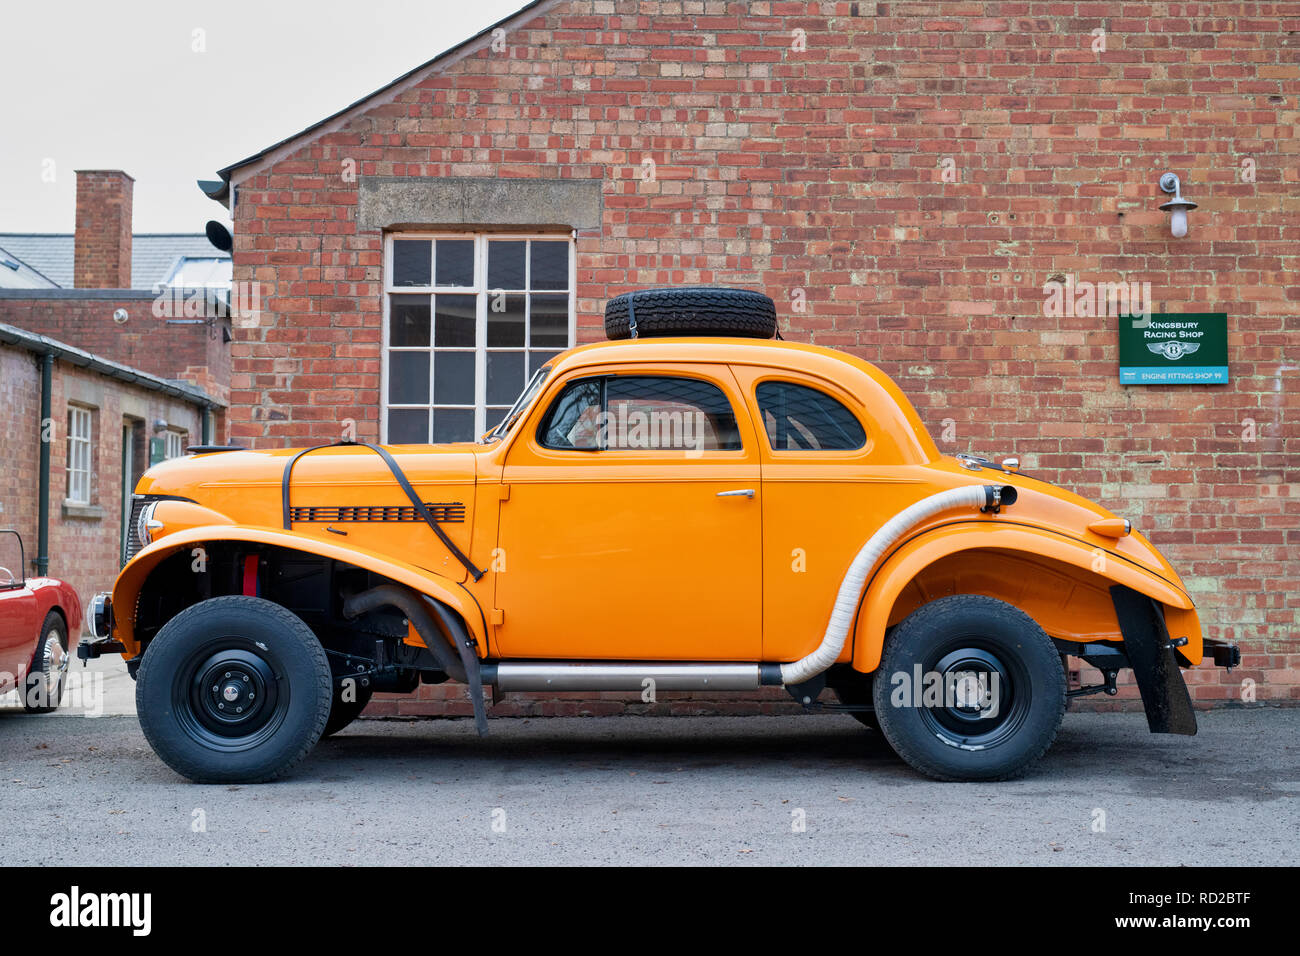 1939 Chevrolet modifié voiture rallye à Bicester Heritage Centre. Oxfordshire, Angleterre Banque D'Images